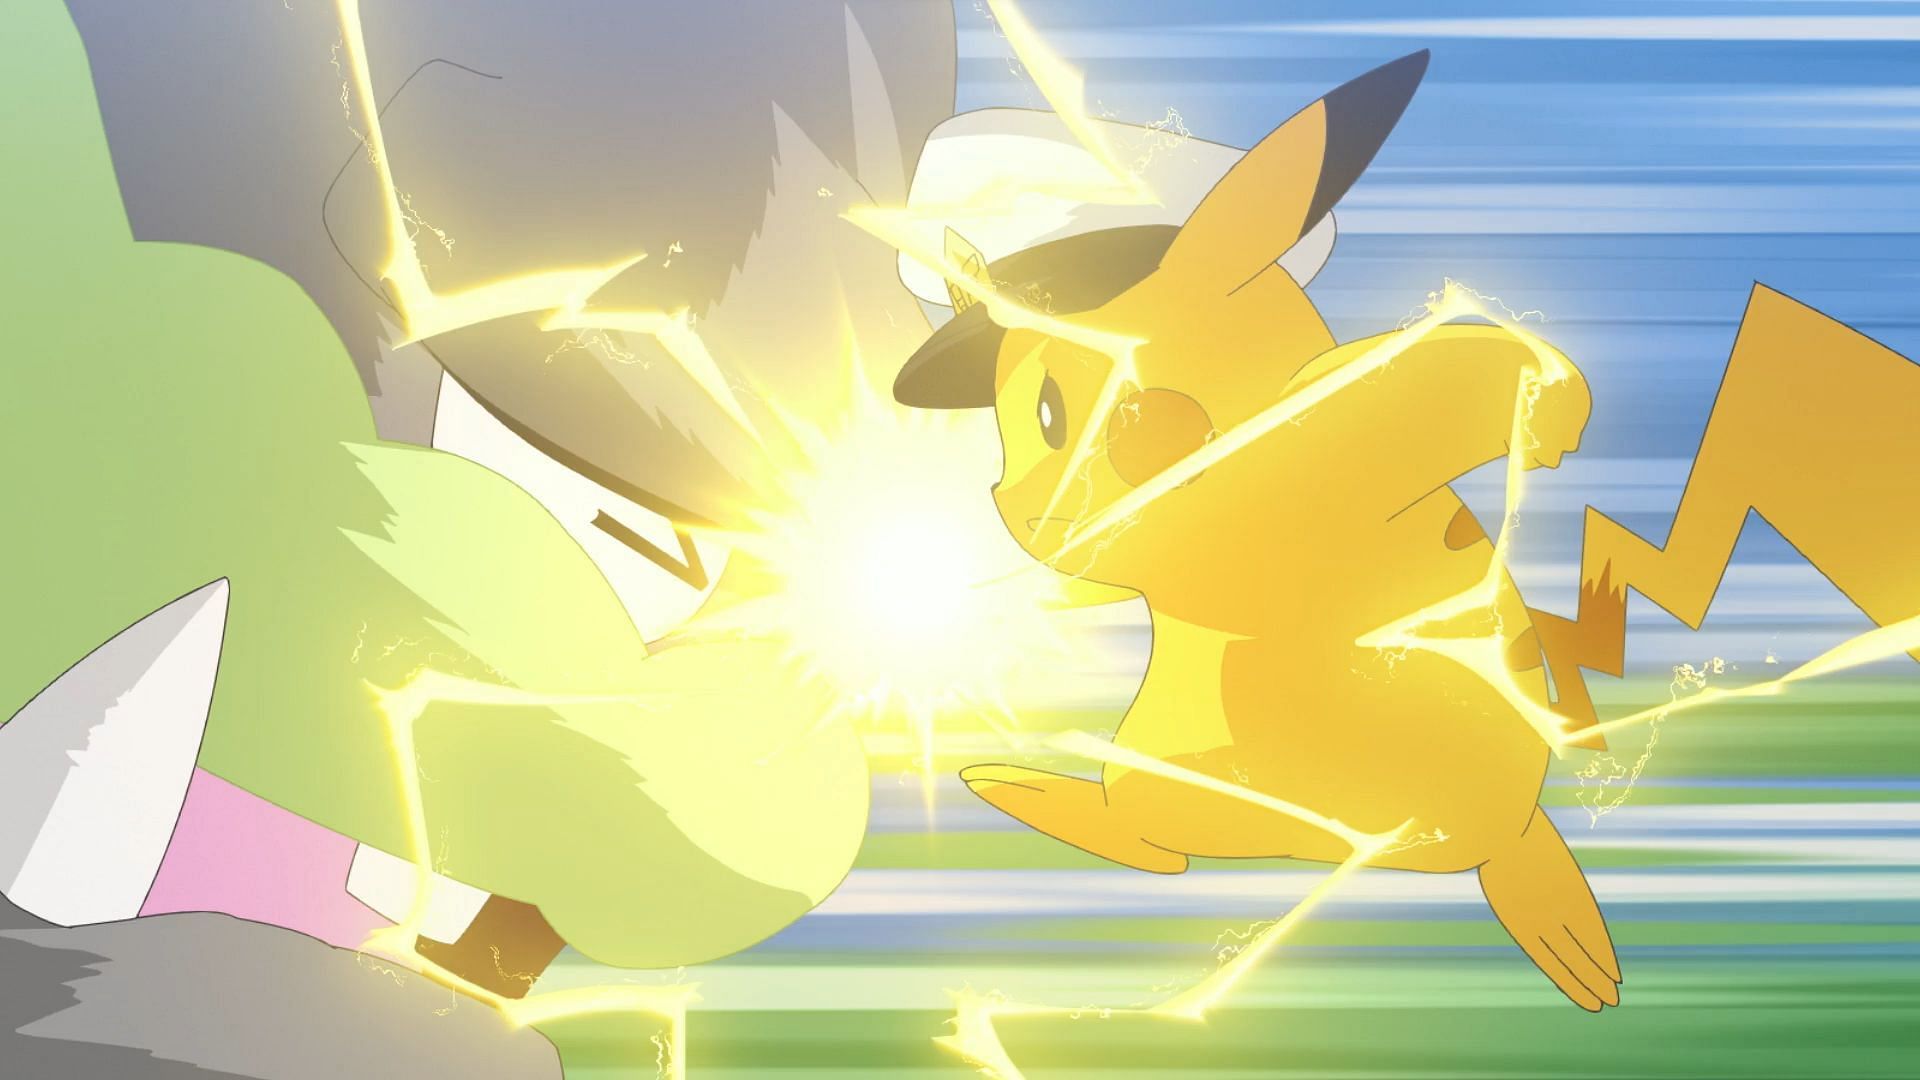 Il Capitano Pikachu colpisce con Tuonopugno in Pokemon Horizons.  (Immagine tramite The Pokemon Company)